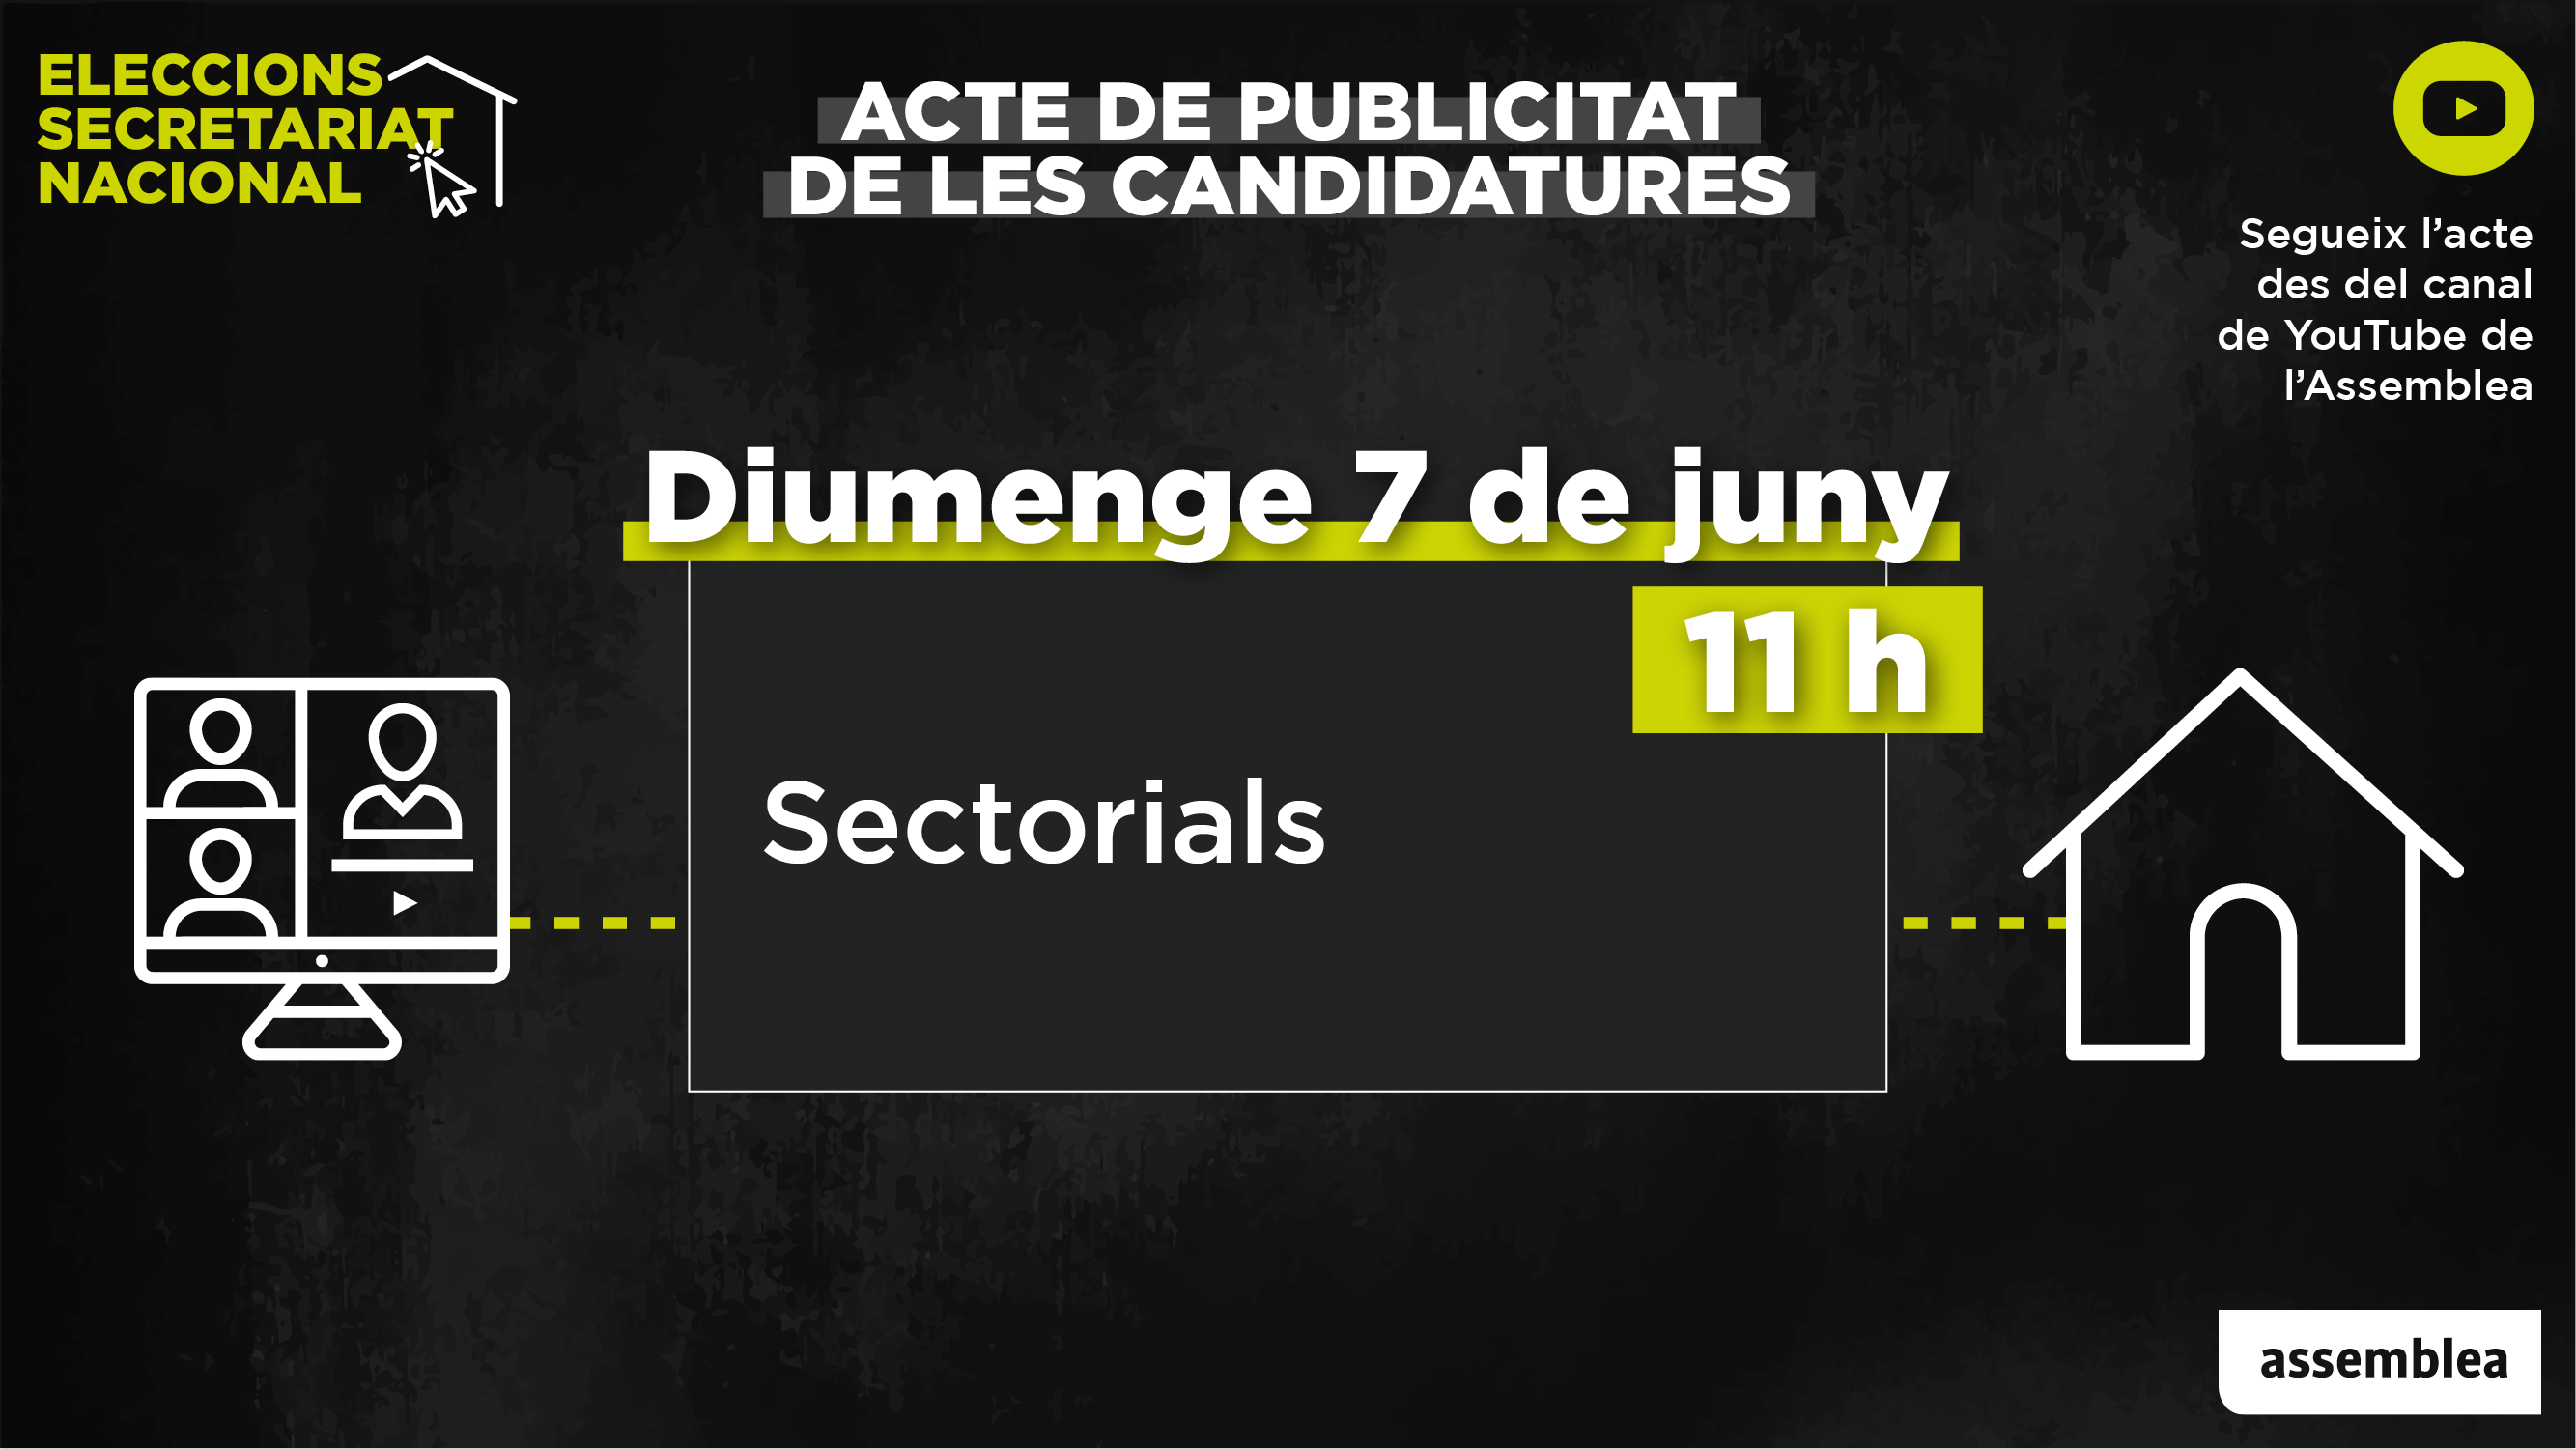 Acte de Sectorials de publicitat de les candidatures de les eleccions al Secretariat Nacional de l'Assemblea.